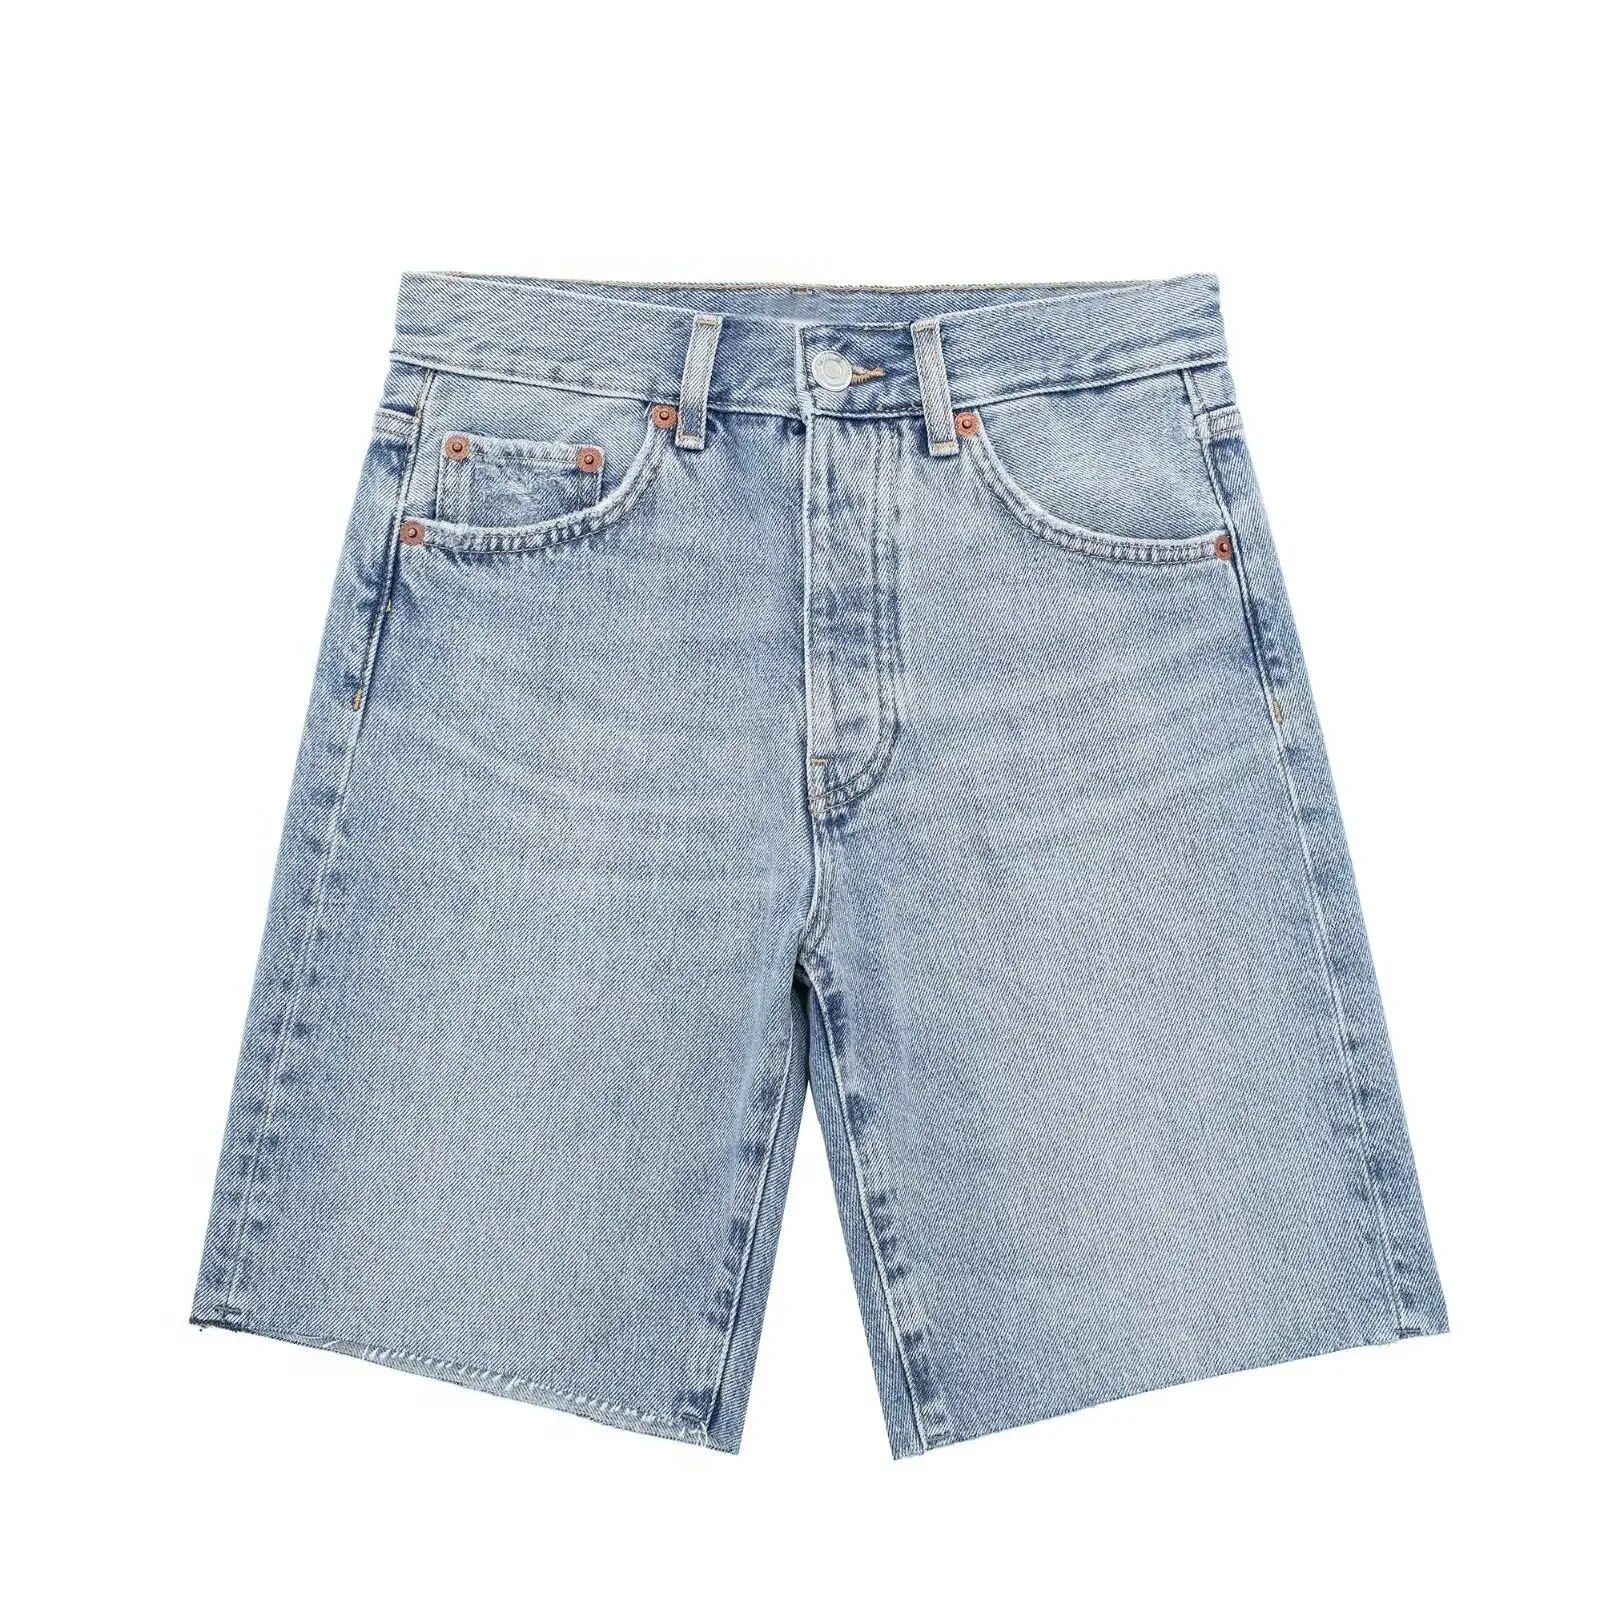 Summer Blue High-Waist Zipper Fly Denim Shorts – Casual & Chic